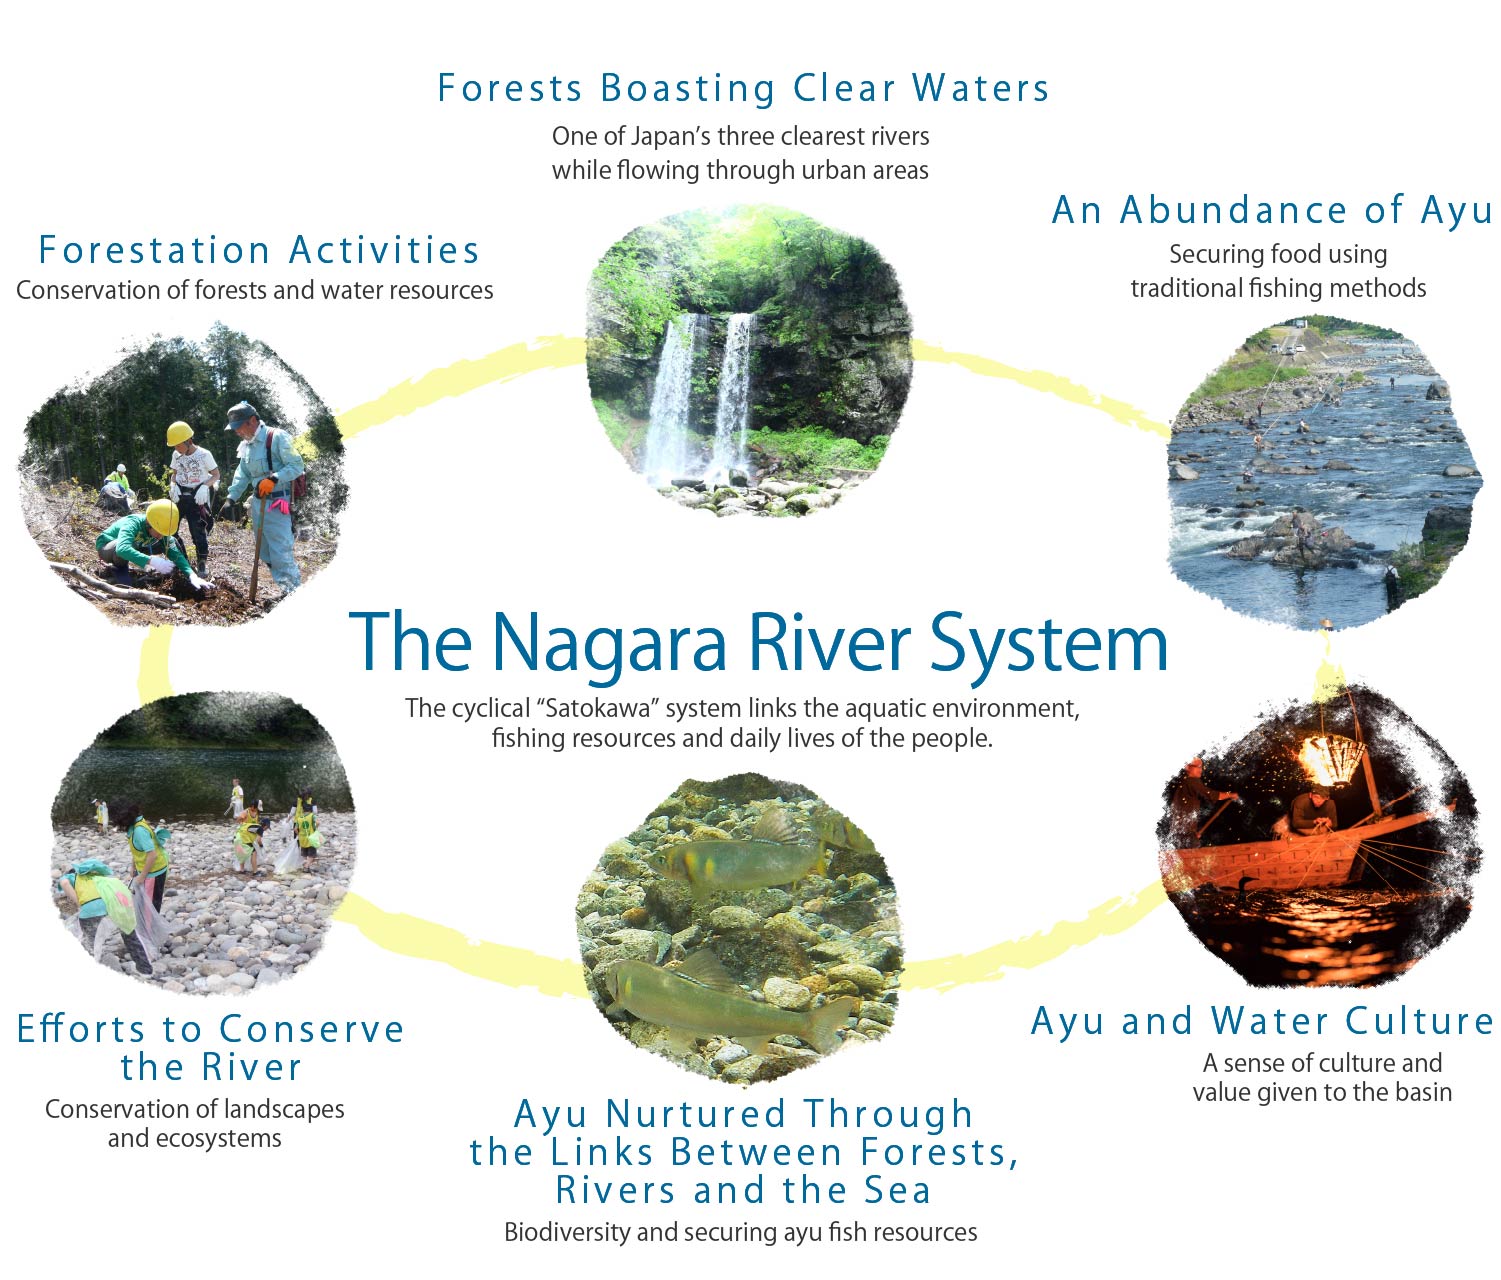 The Nagara River System